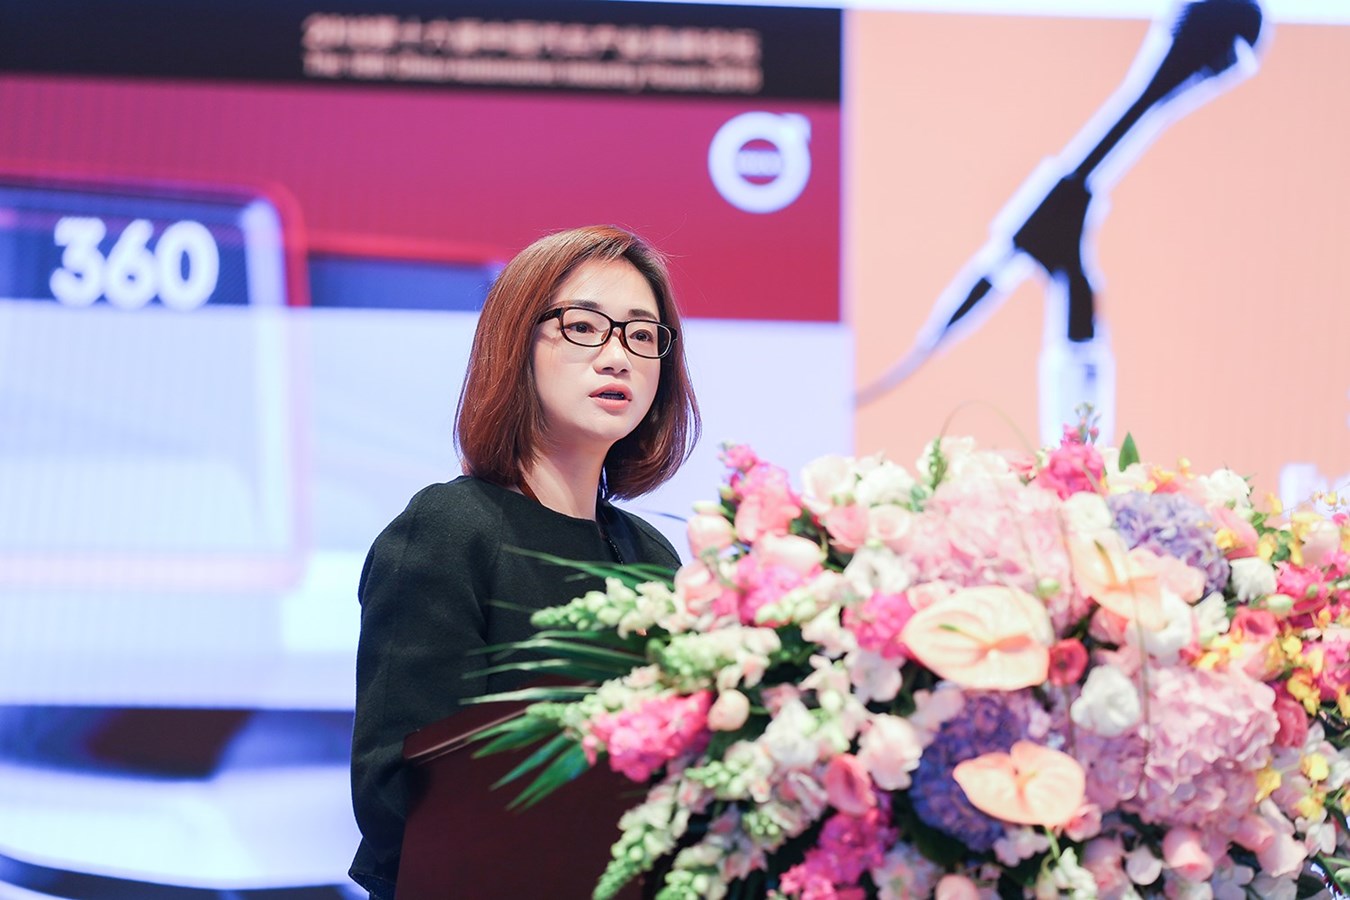 赵琴女士发表主题为《创造历史，否则只能成为历史——创新和坚持是掌握未来的关键》的演讲